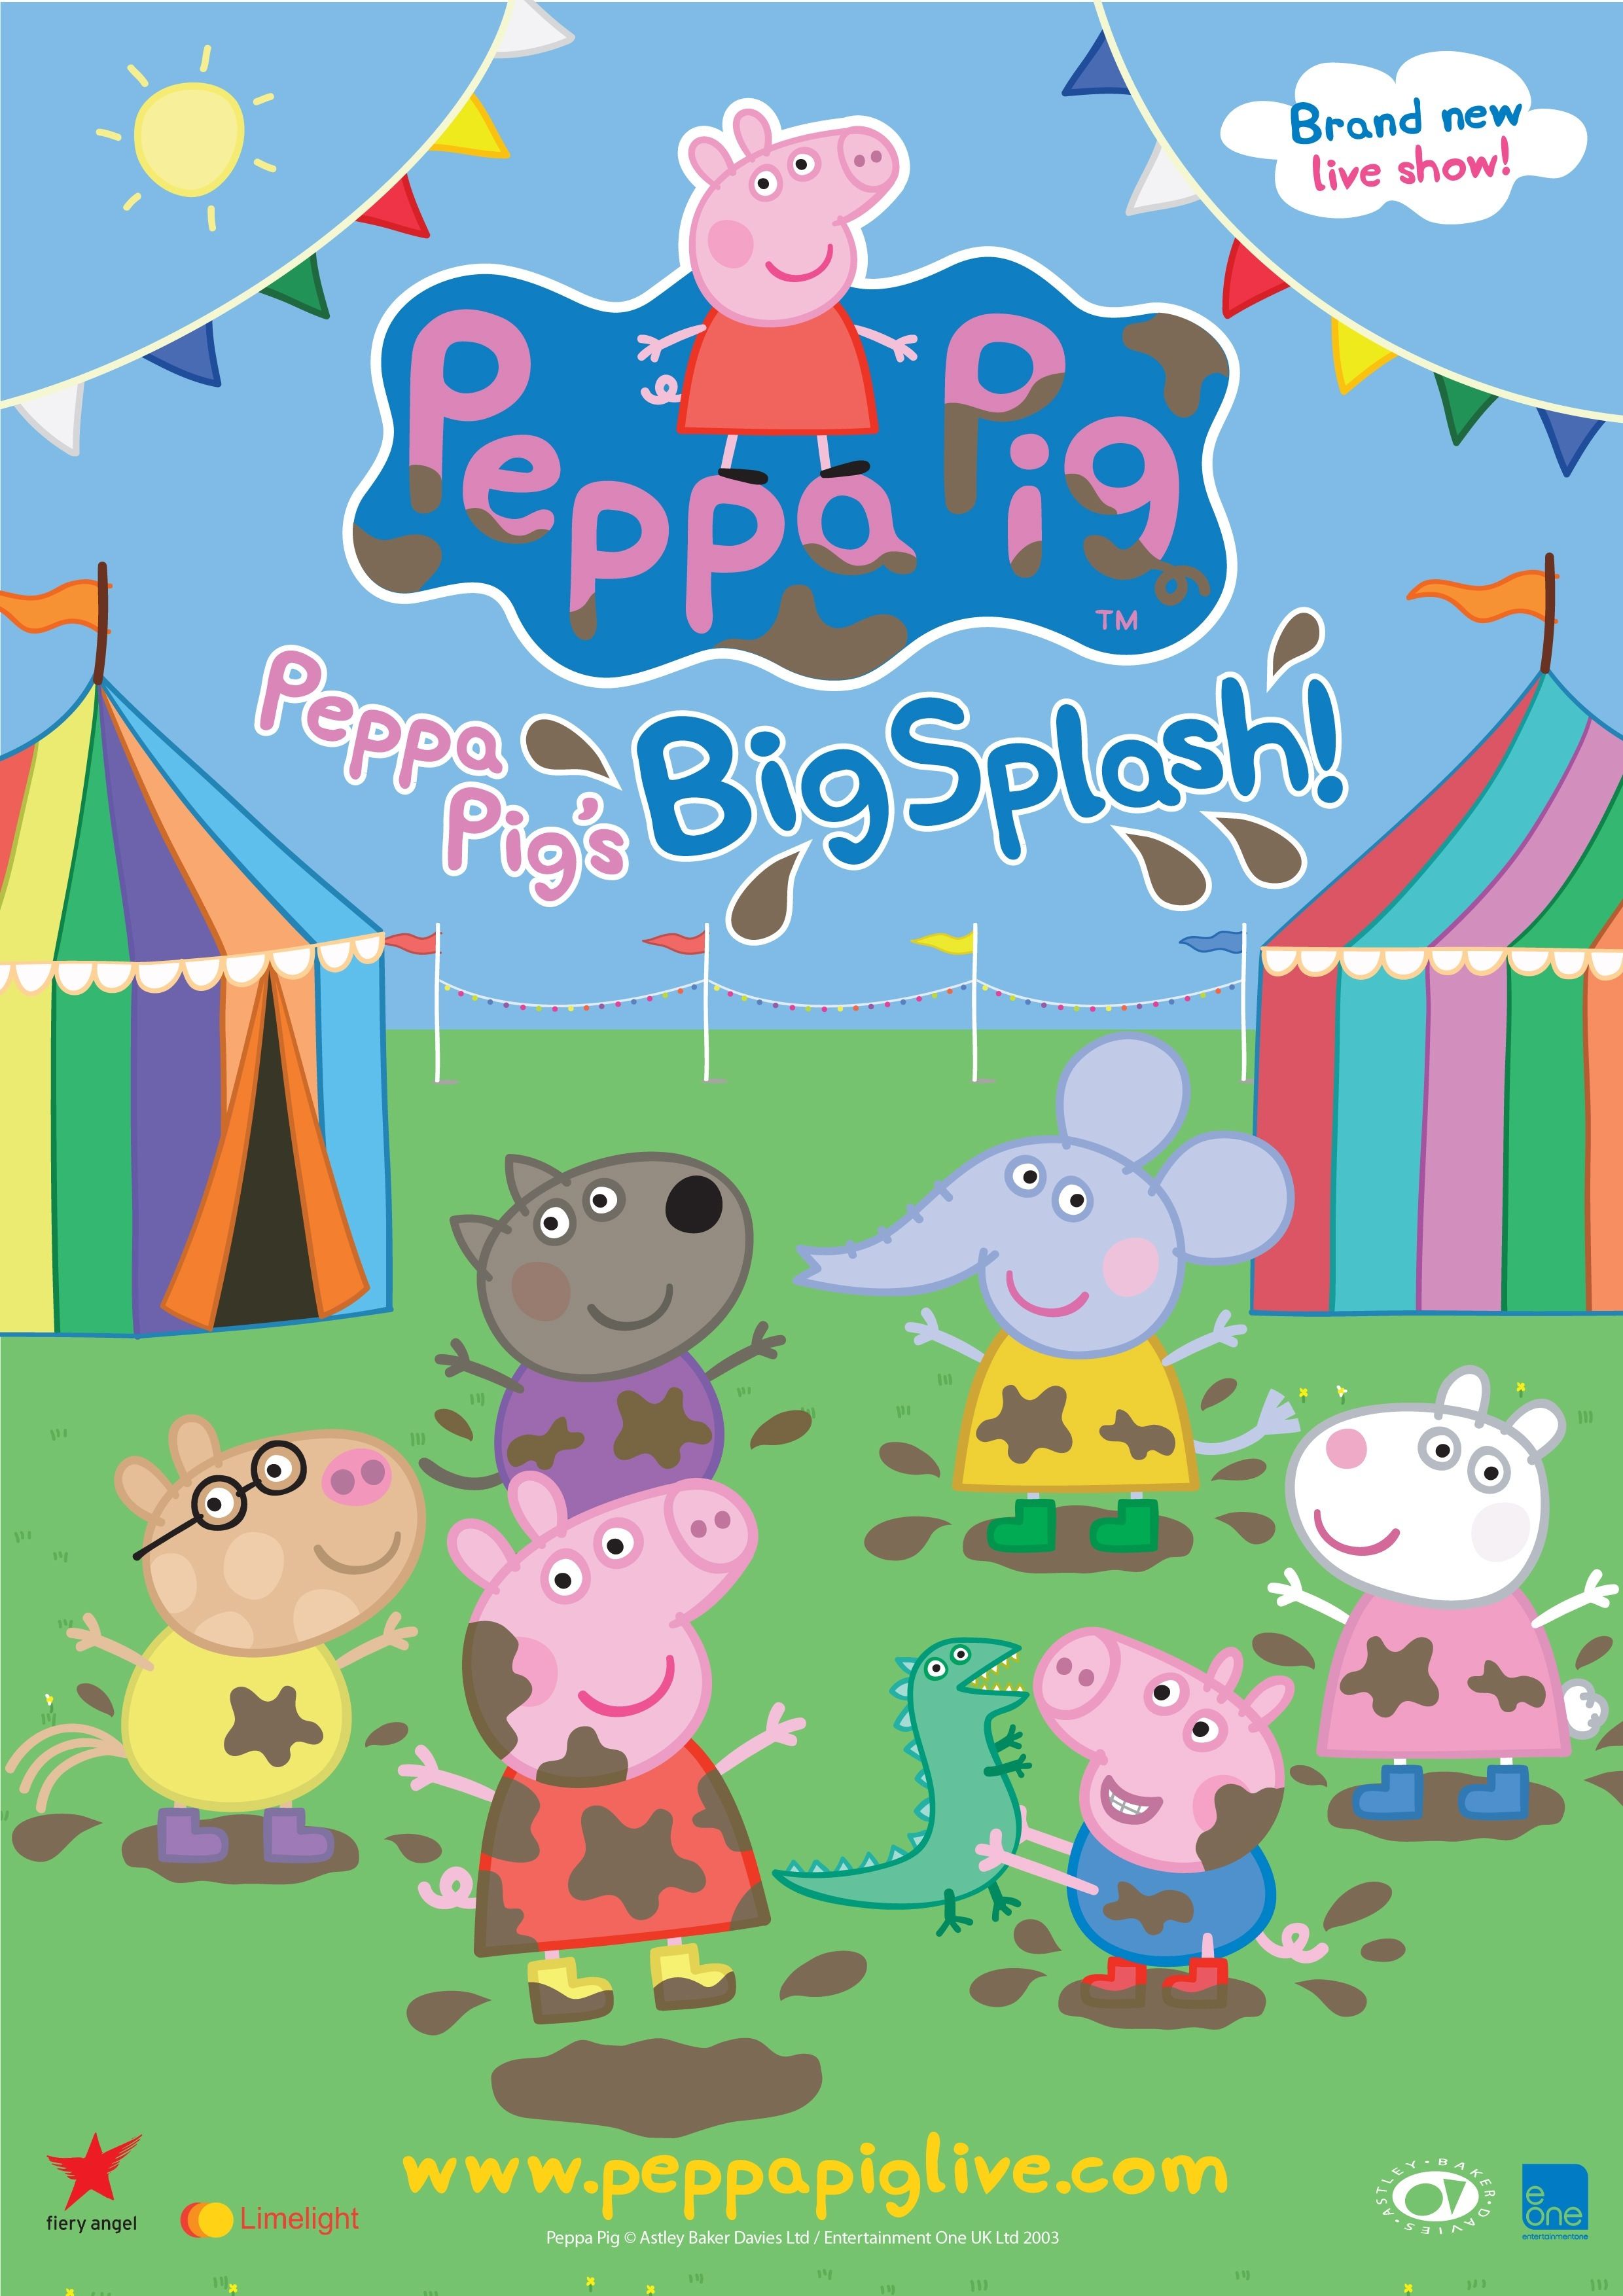 Peppa Pig Wallpapers